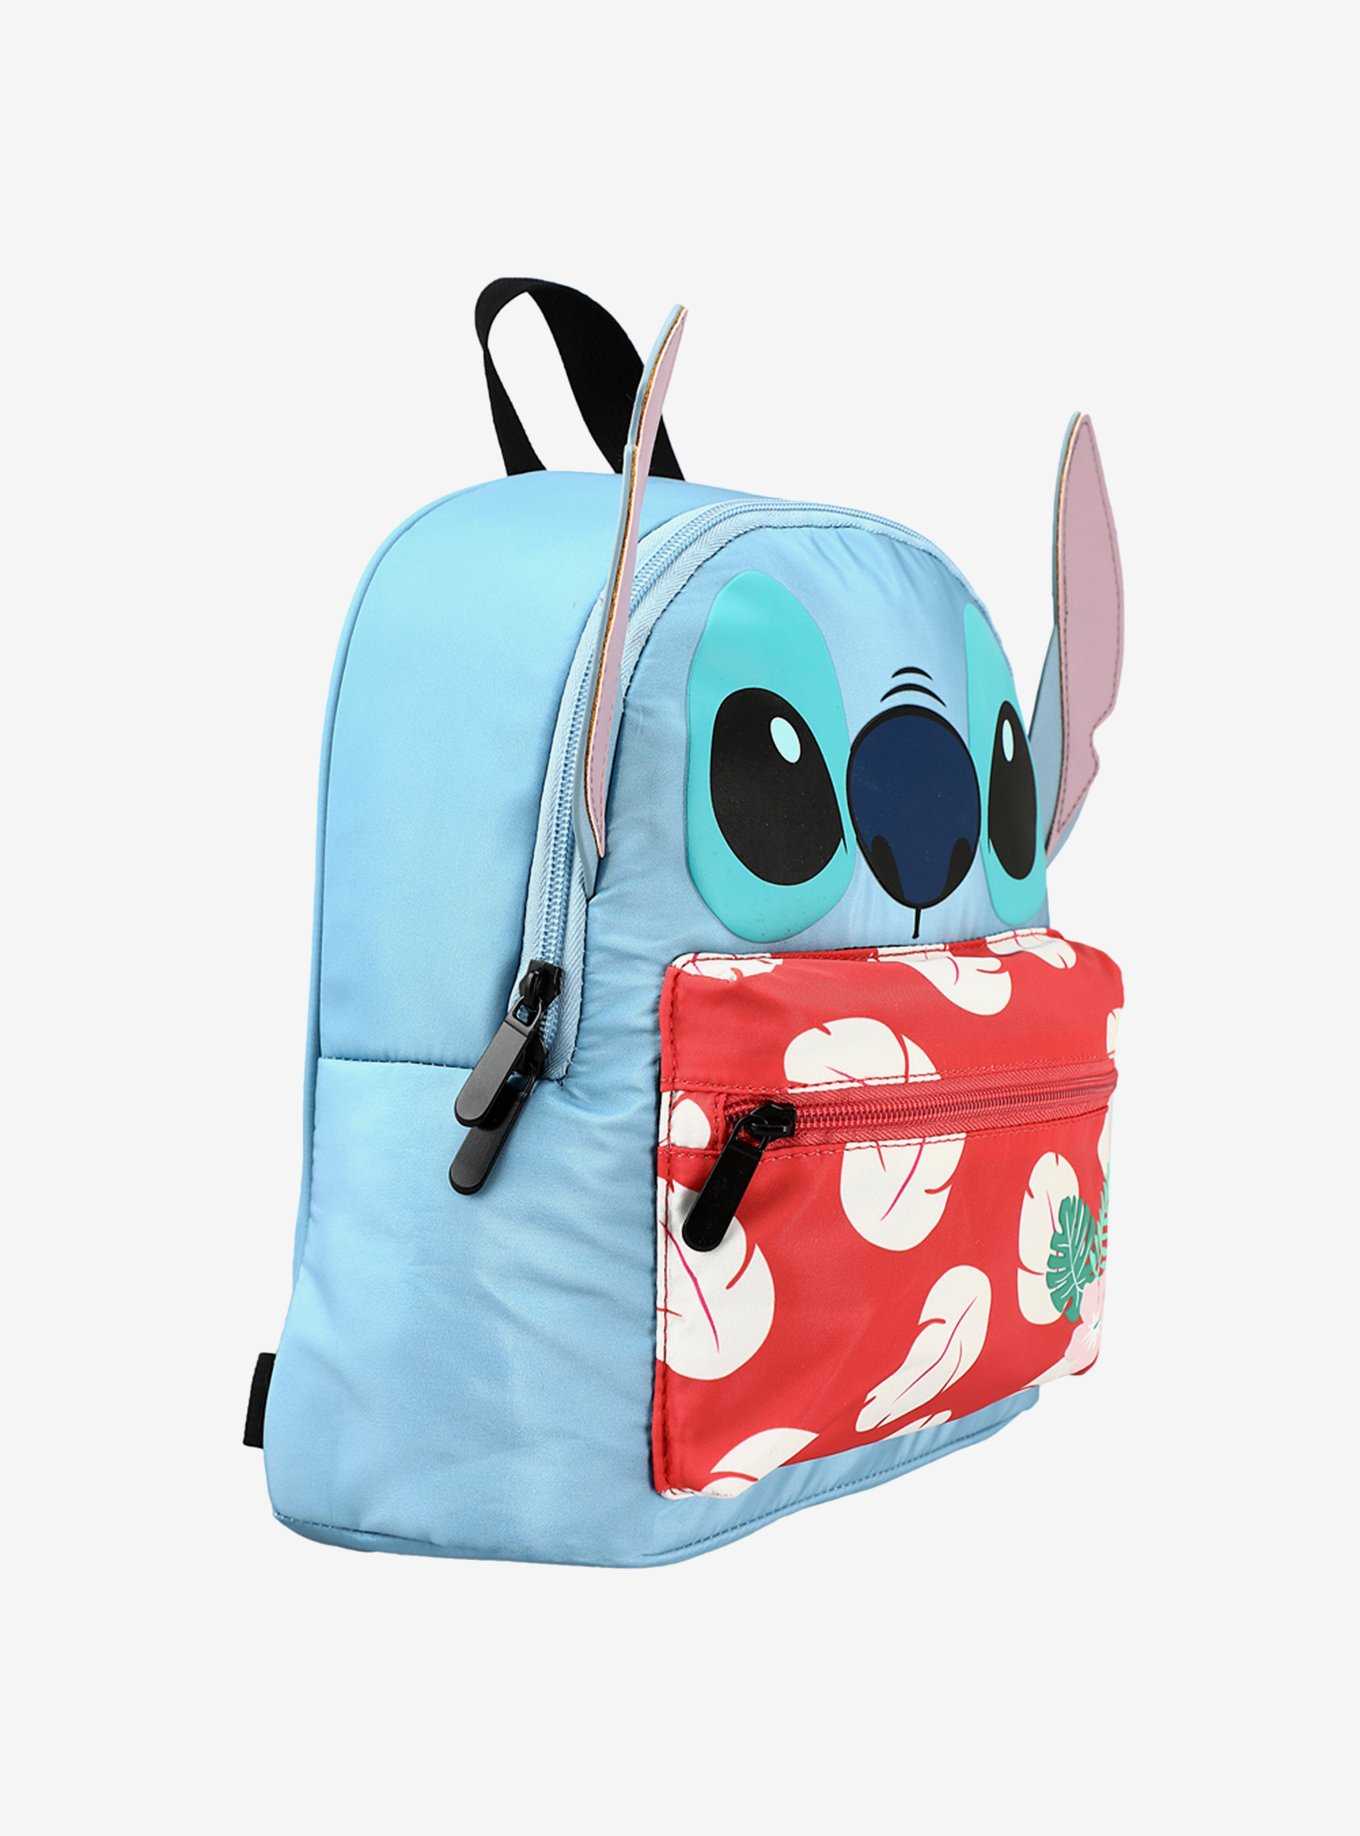 Disney Stitch 3D Ears Mini Backpack, , hi-res